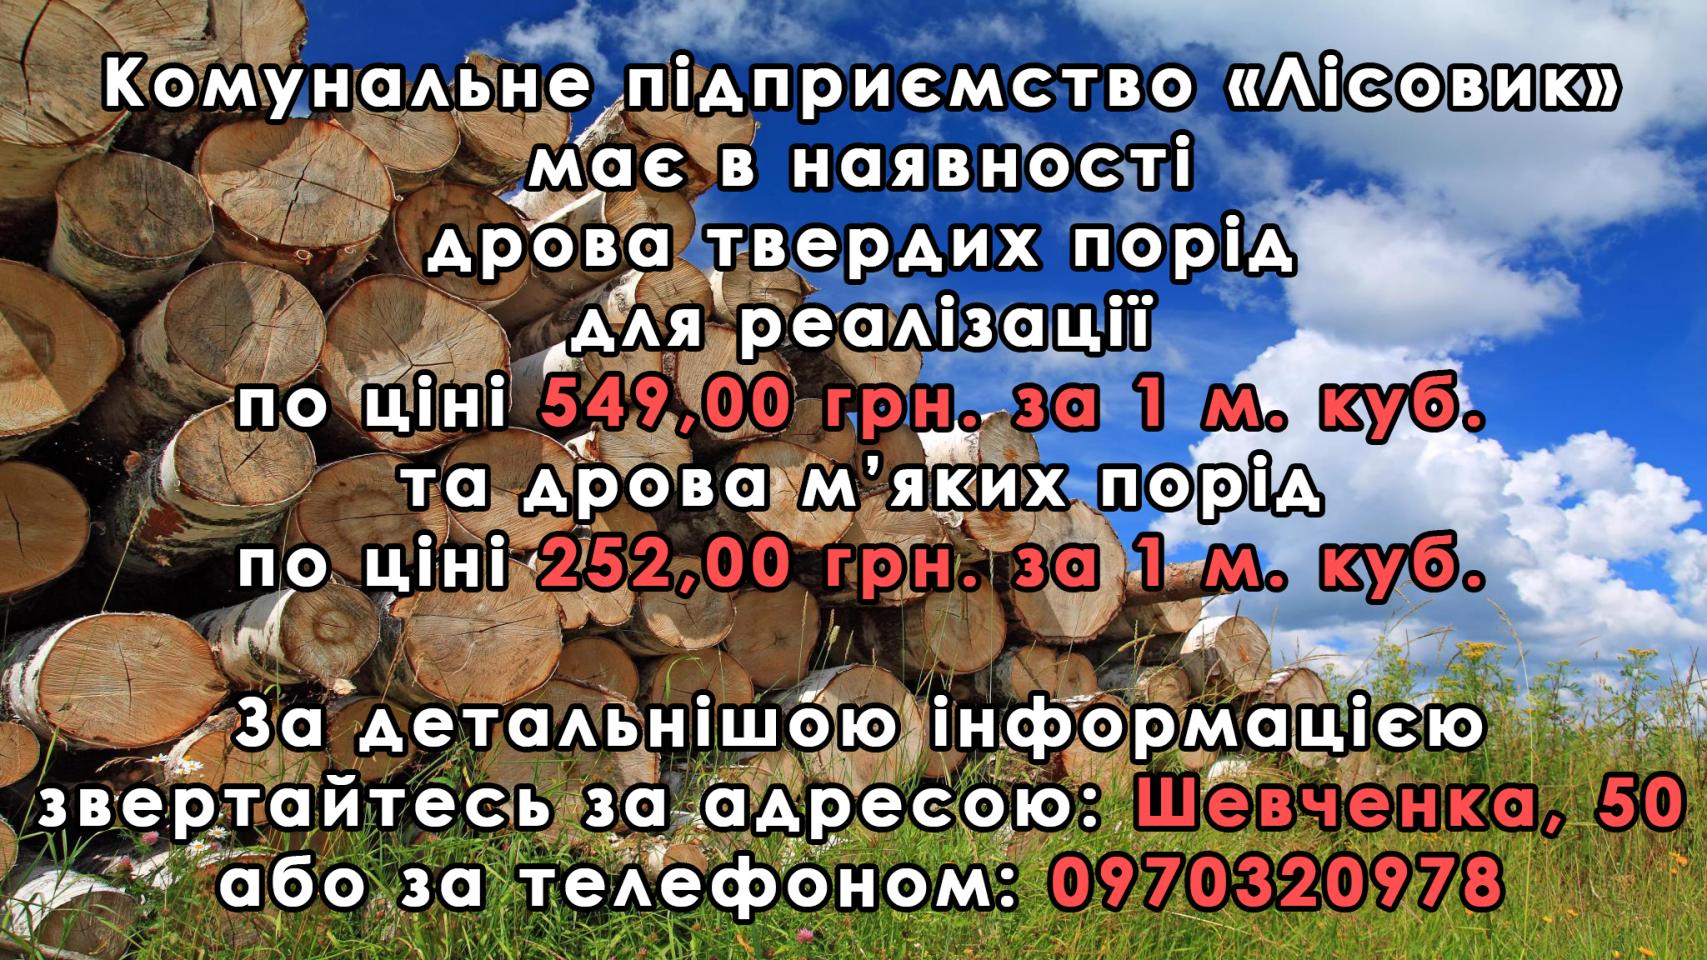 http://dunrada.gov.ua/uploadfile/archive_news/2021/02/09/2021-02-09_5590/images/images-2771.jpg